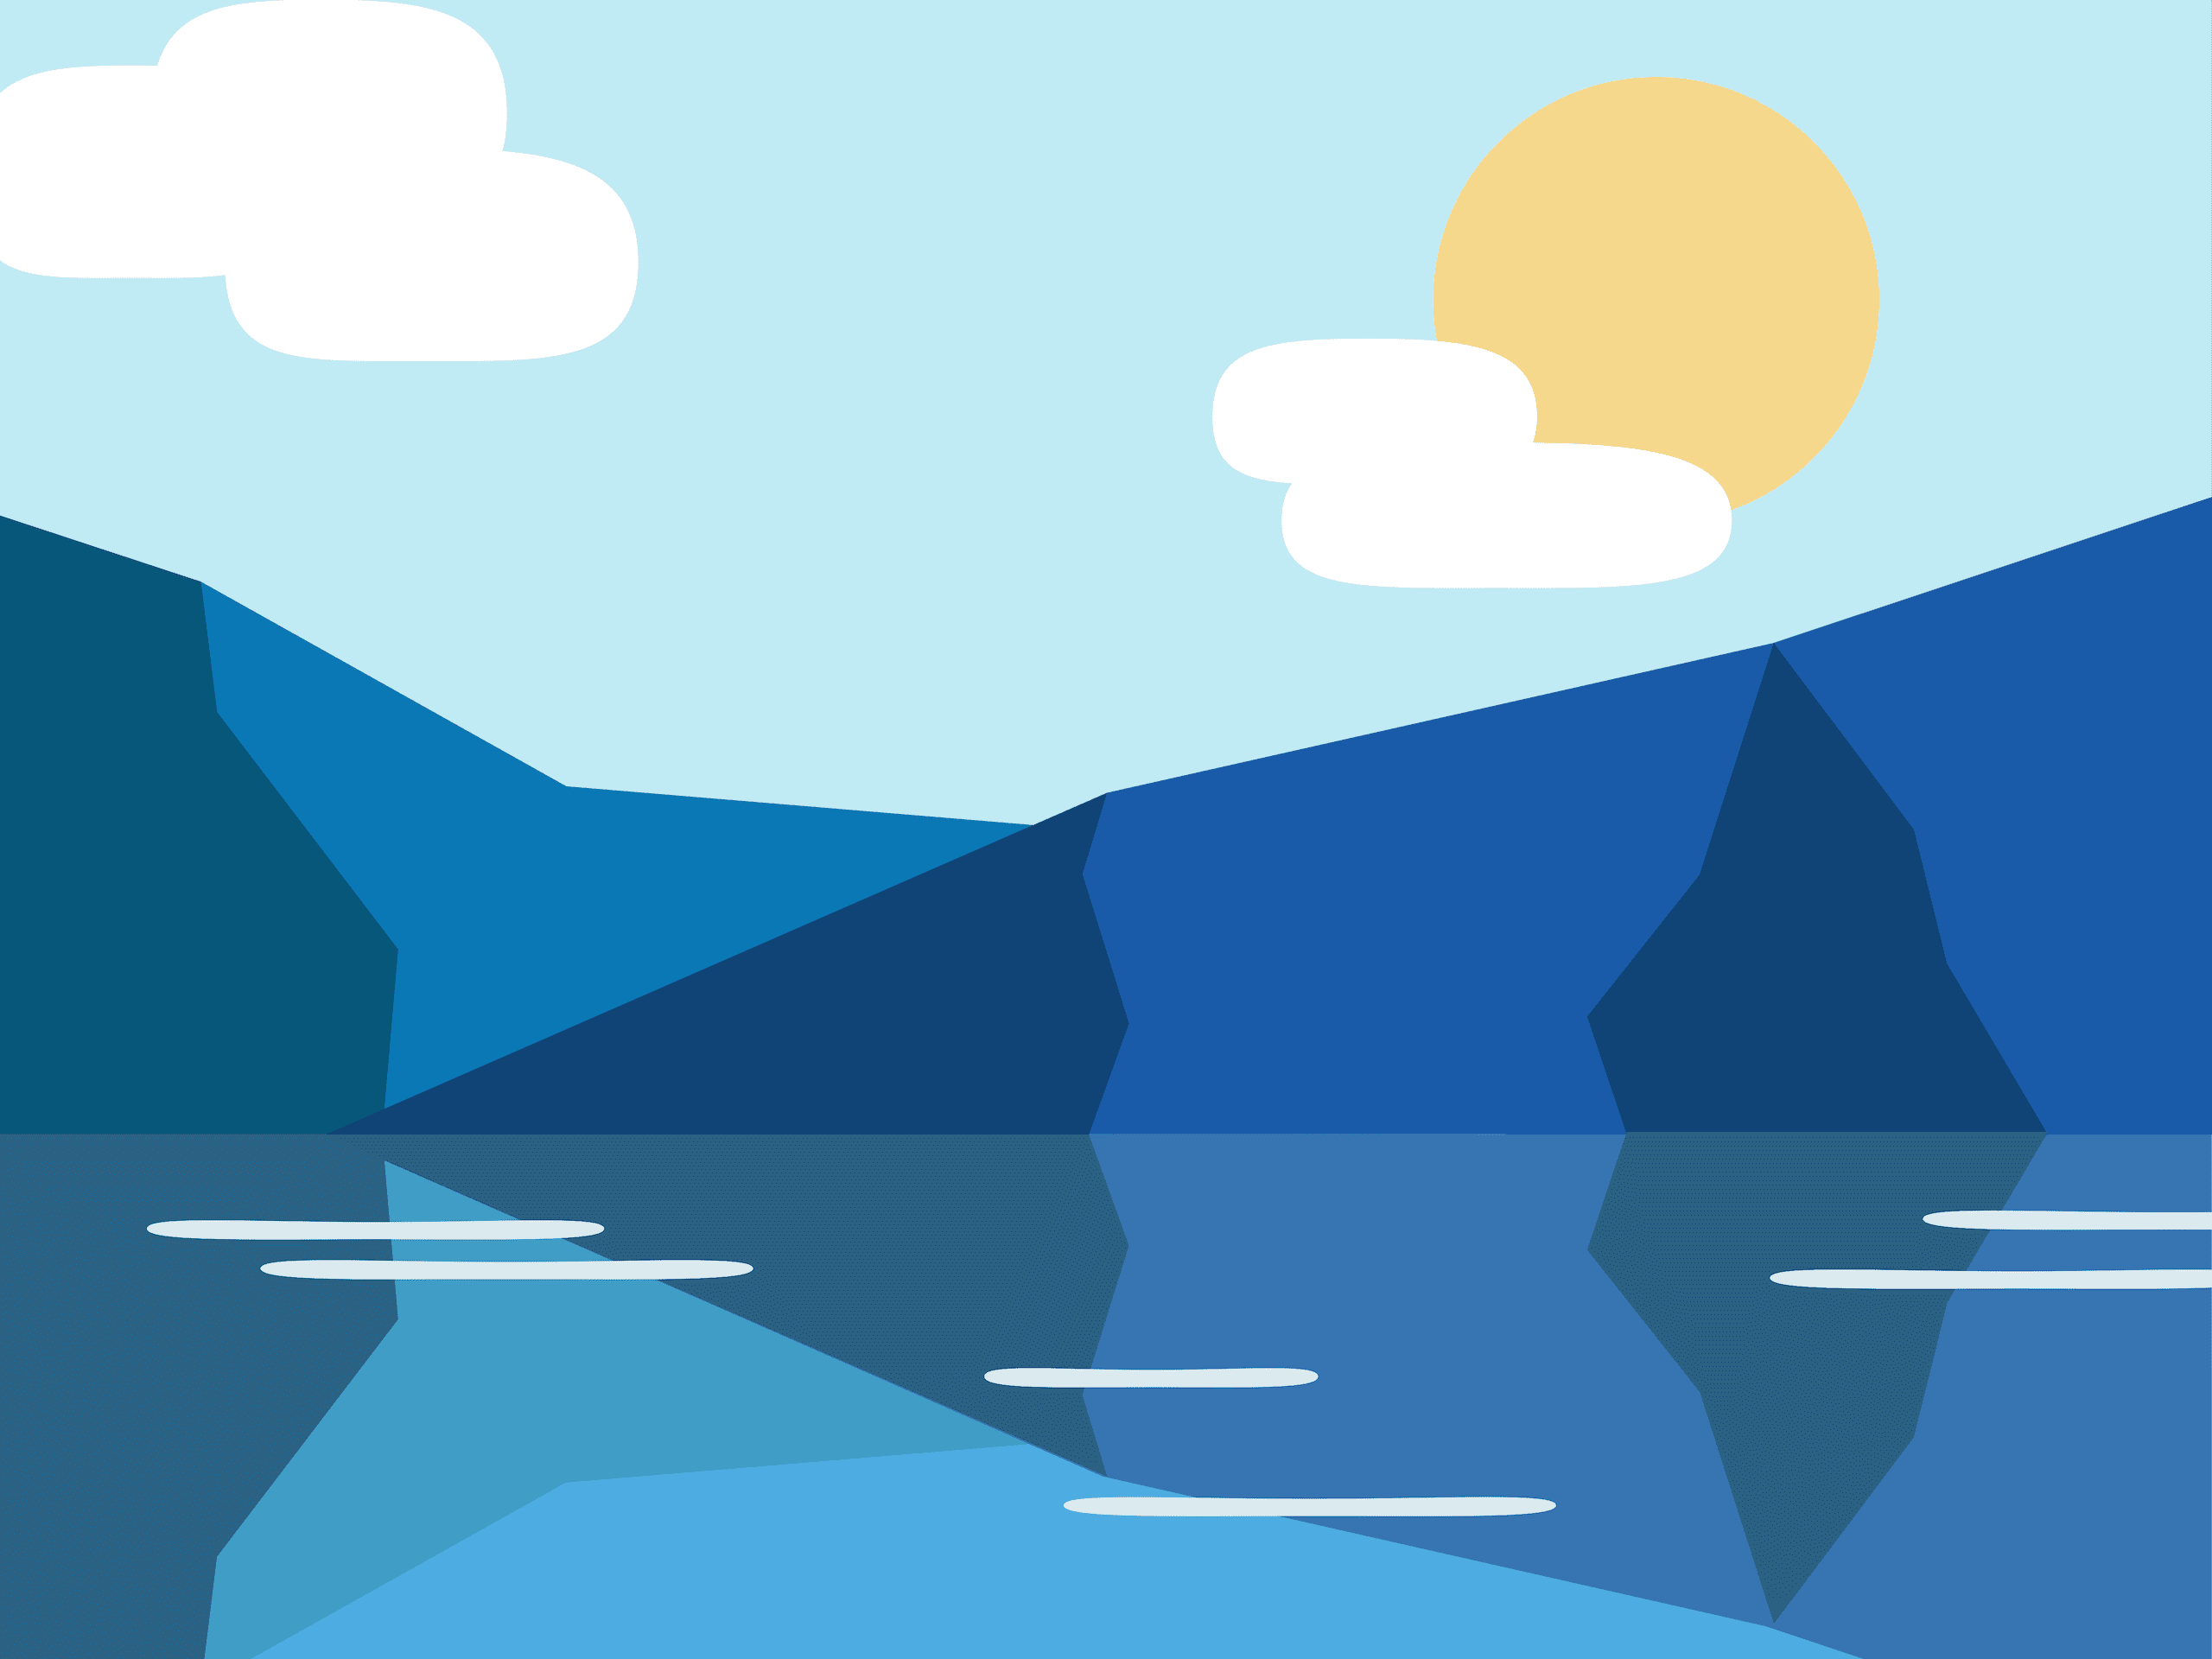 Mountains behind a lake